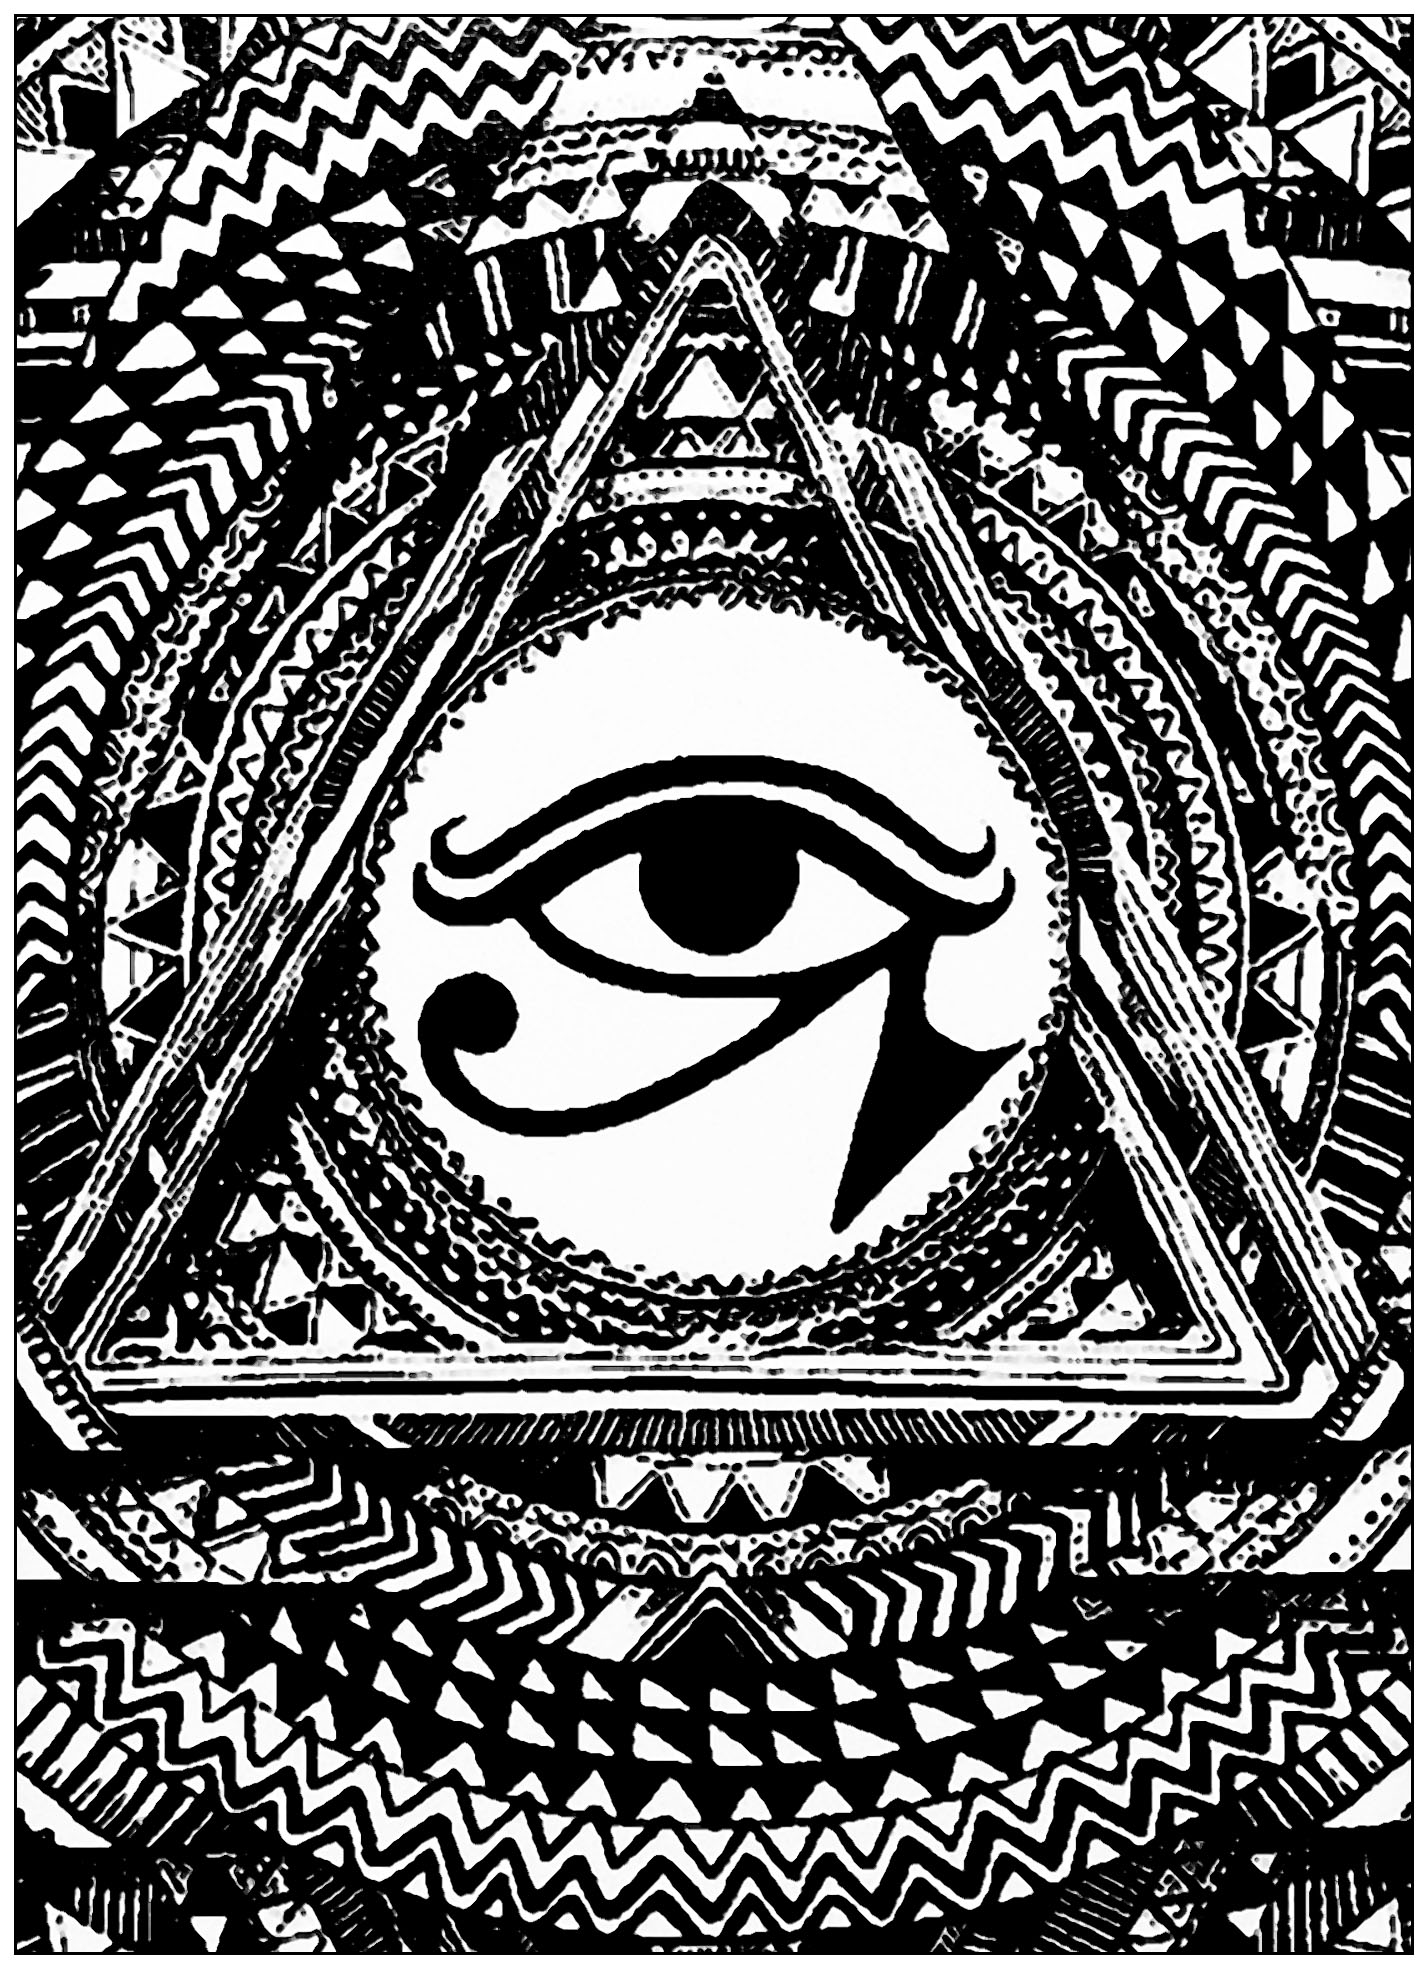 Olho de Hórus num triângulo. O Olho de Hórus era usado como sinal de prosperidade e proteção, derivado do mito de Ísis e Osíris. Este símbolo tem uma ligação surpreendente entre a estrutura e a função neuroanatómica.